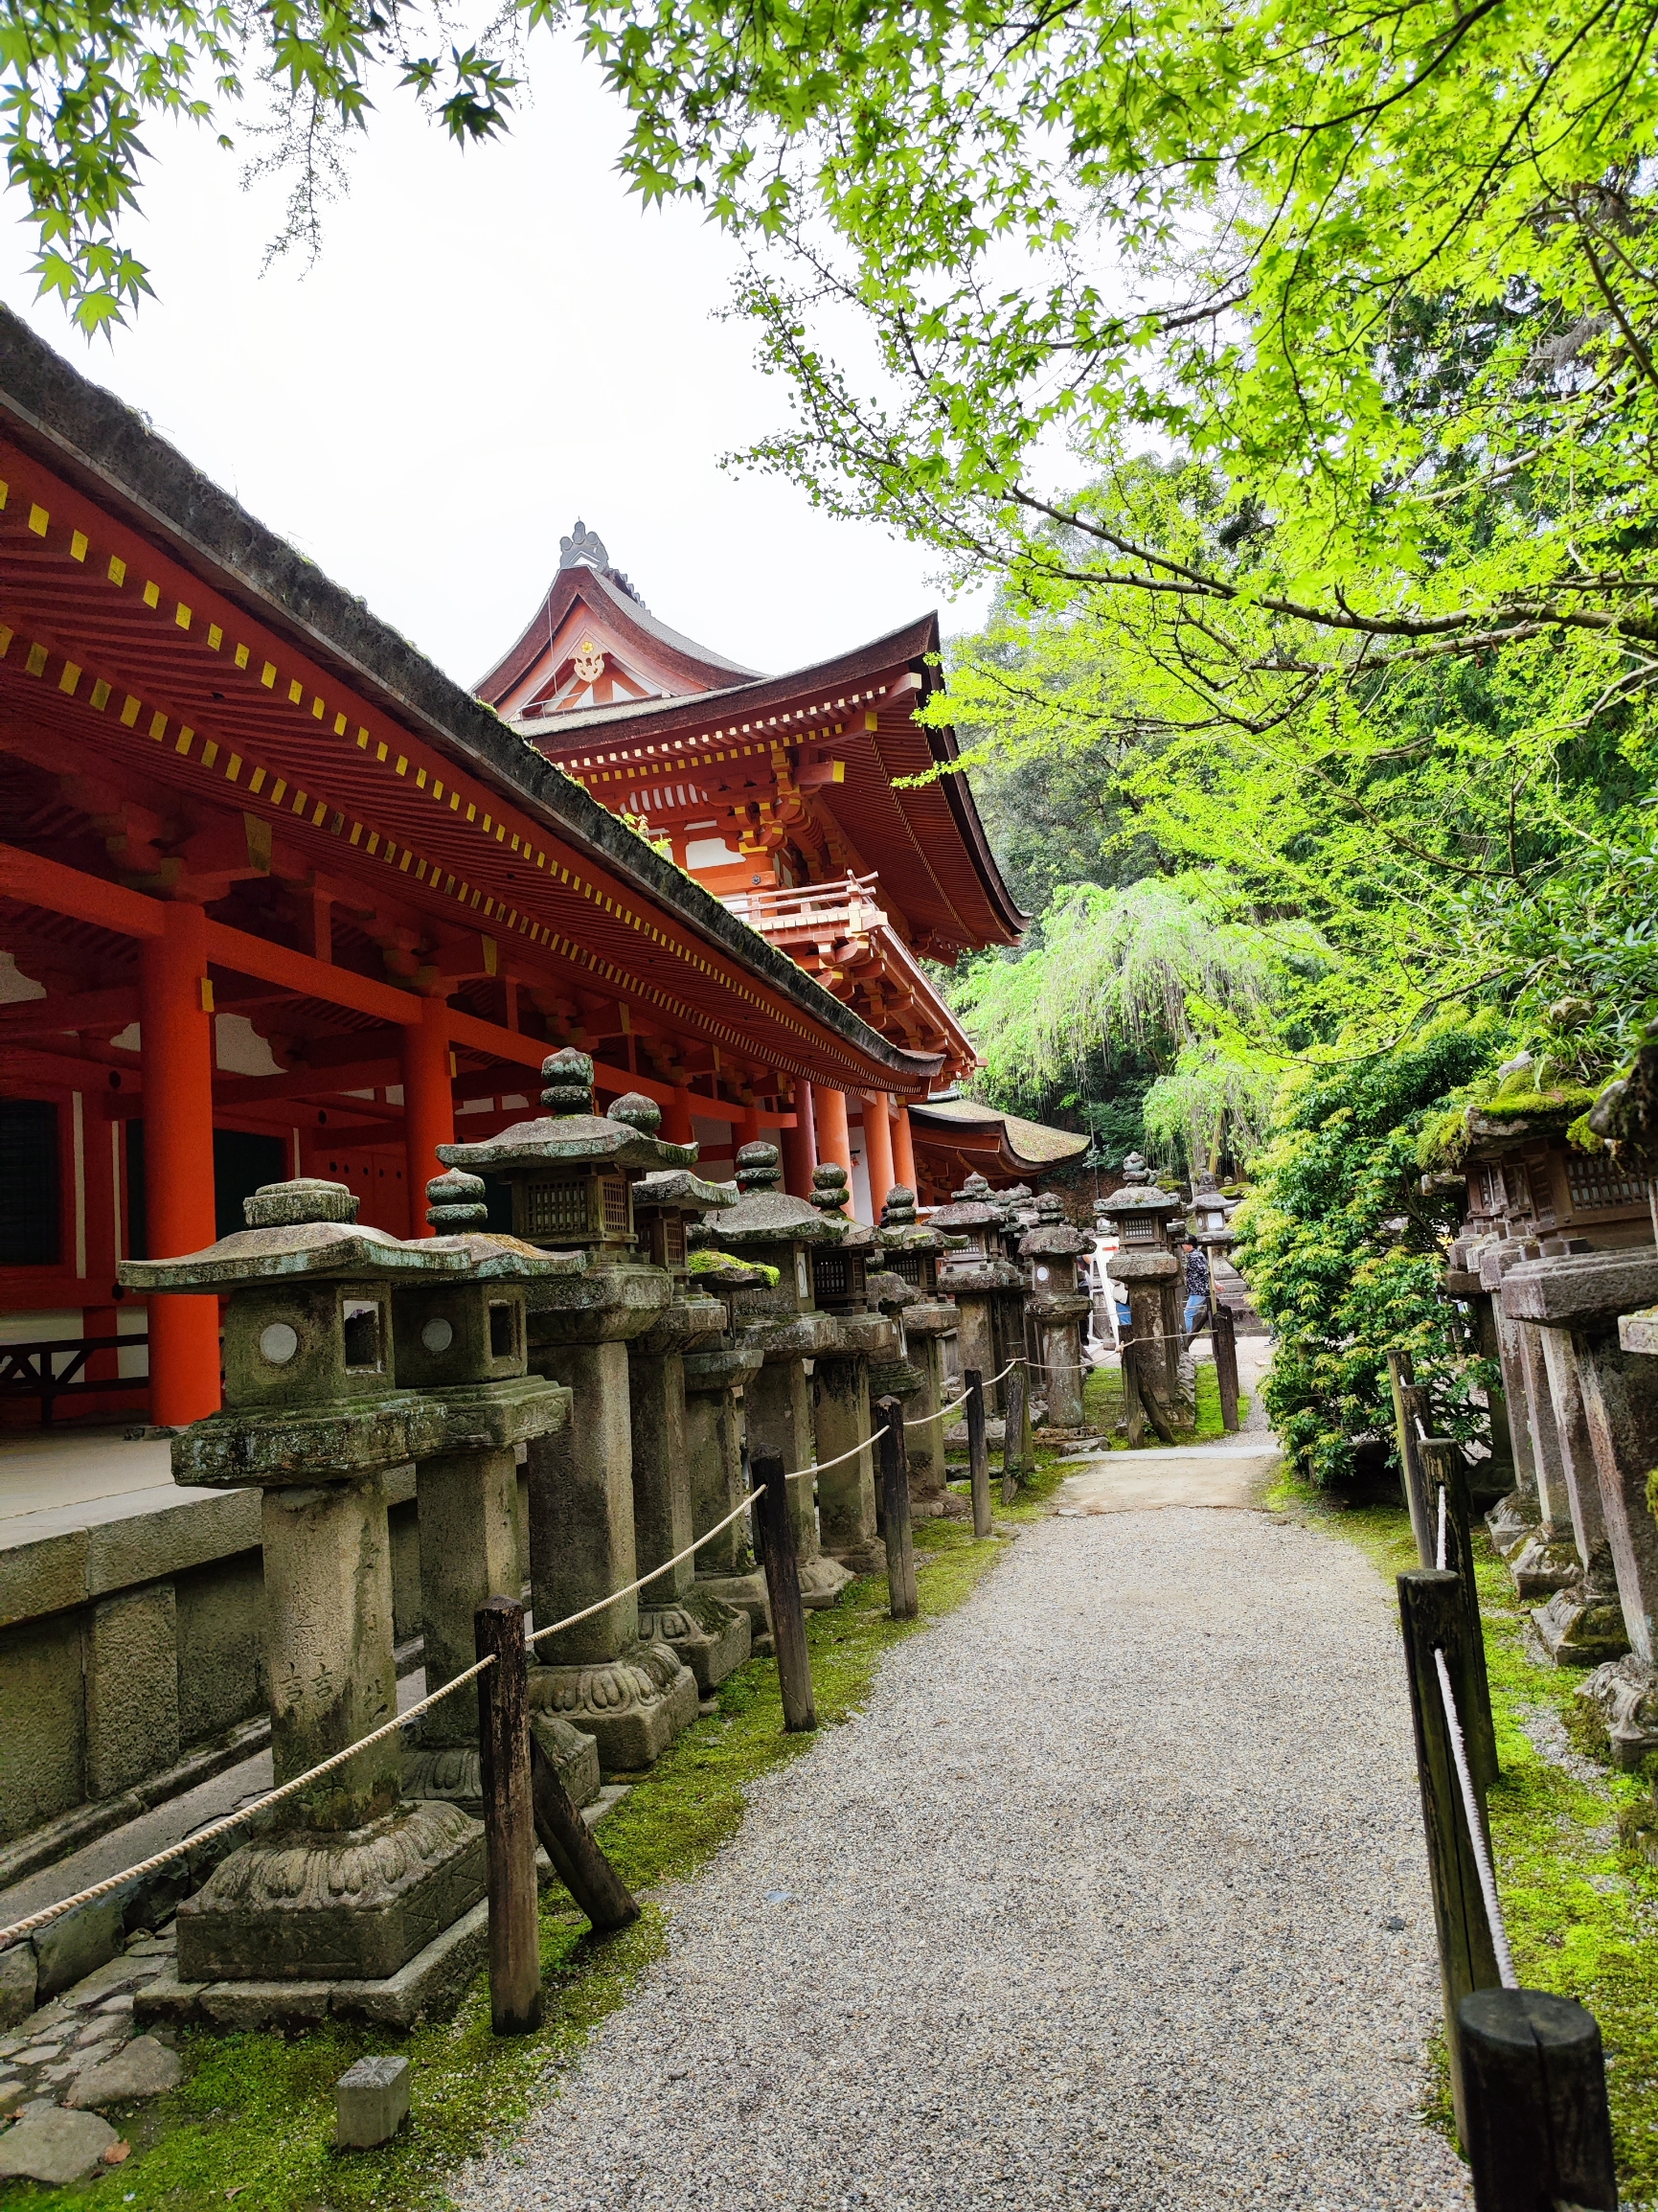 世界文化遗产《春日大社》是日本三大神社之一，真正的千年古刹。神社后面的春日神山丛林覆盖一片郁郁葱葱，